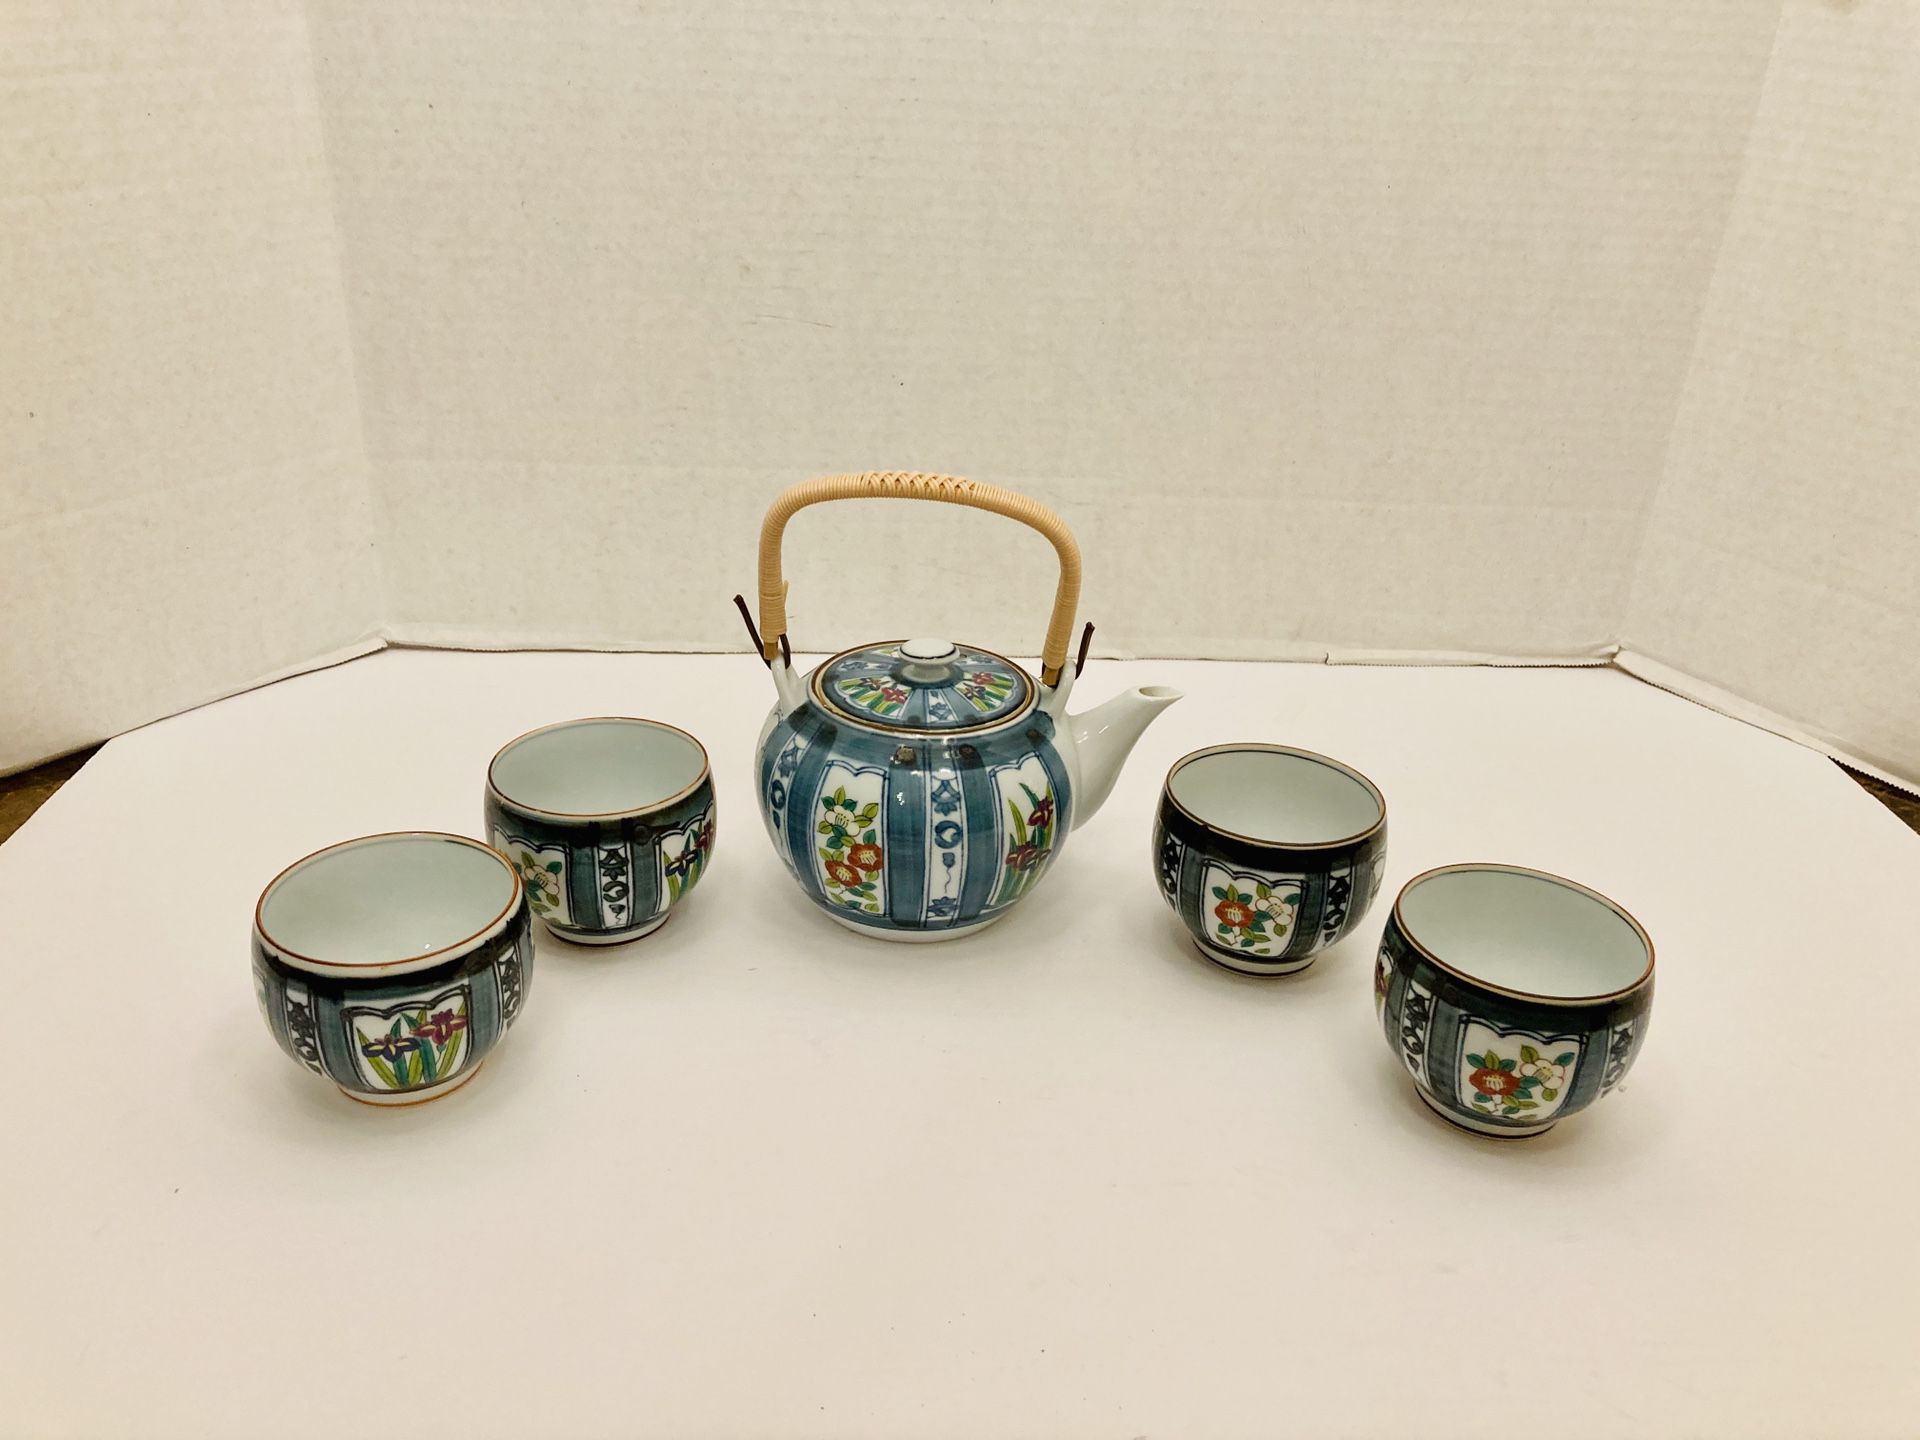 Vintage Japanese Porcelain Tea Pot Woven Handle with 4 Tea Cups